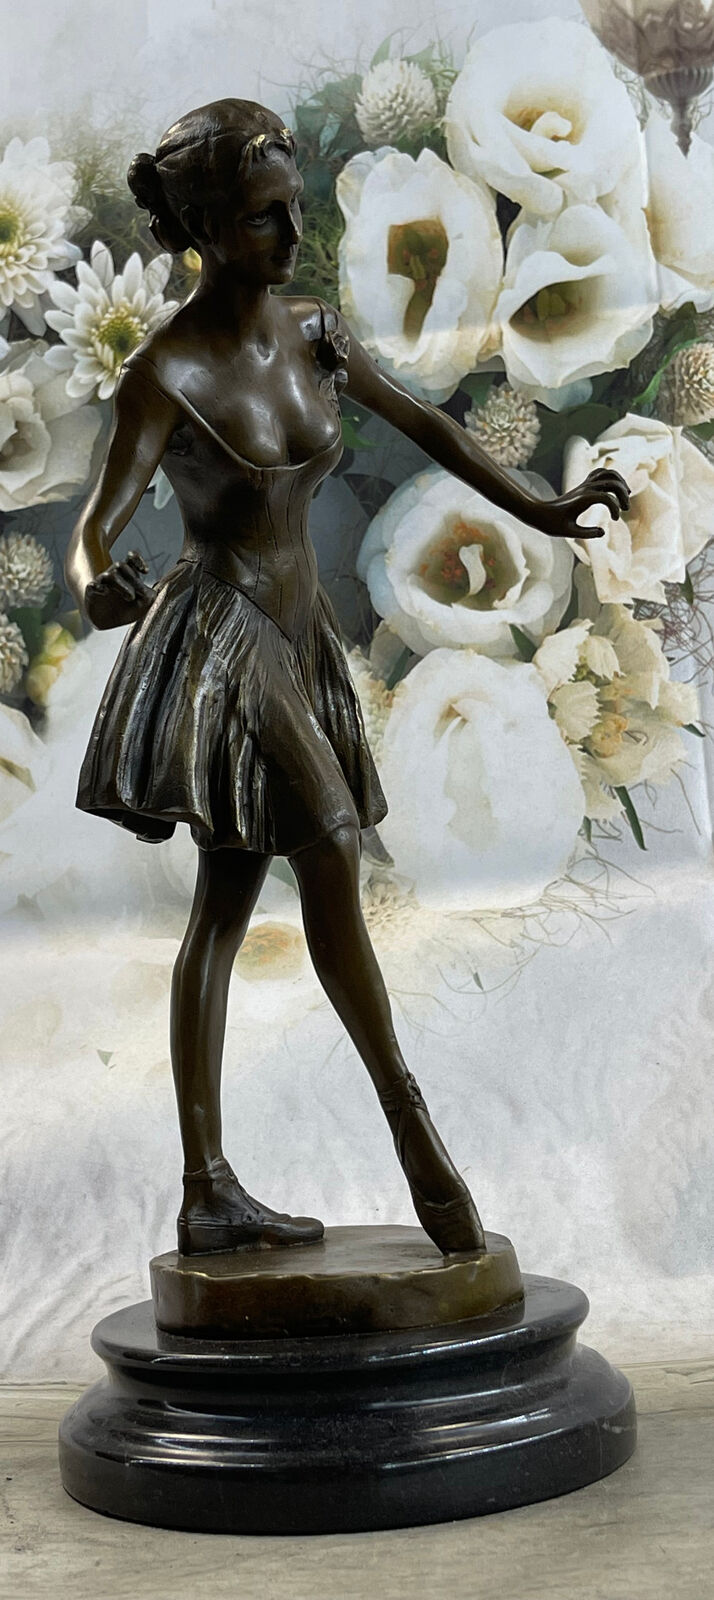 Ballerina Bronze Sculpture Art Nouveau Deco Figurine statue Figure Home Decor